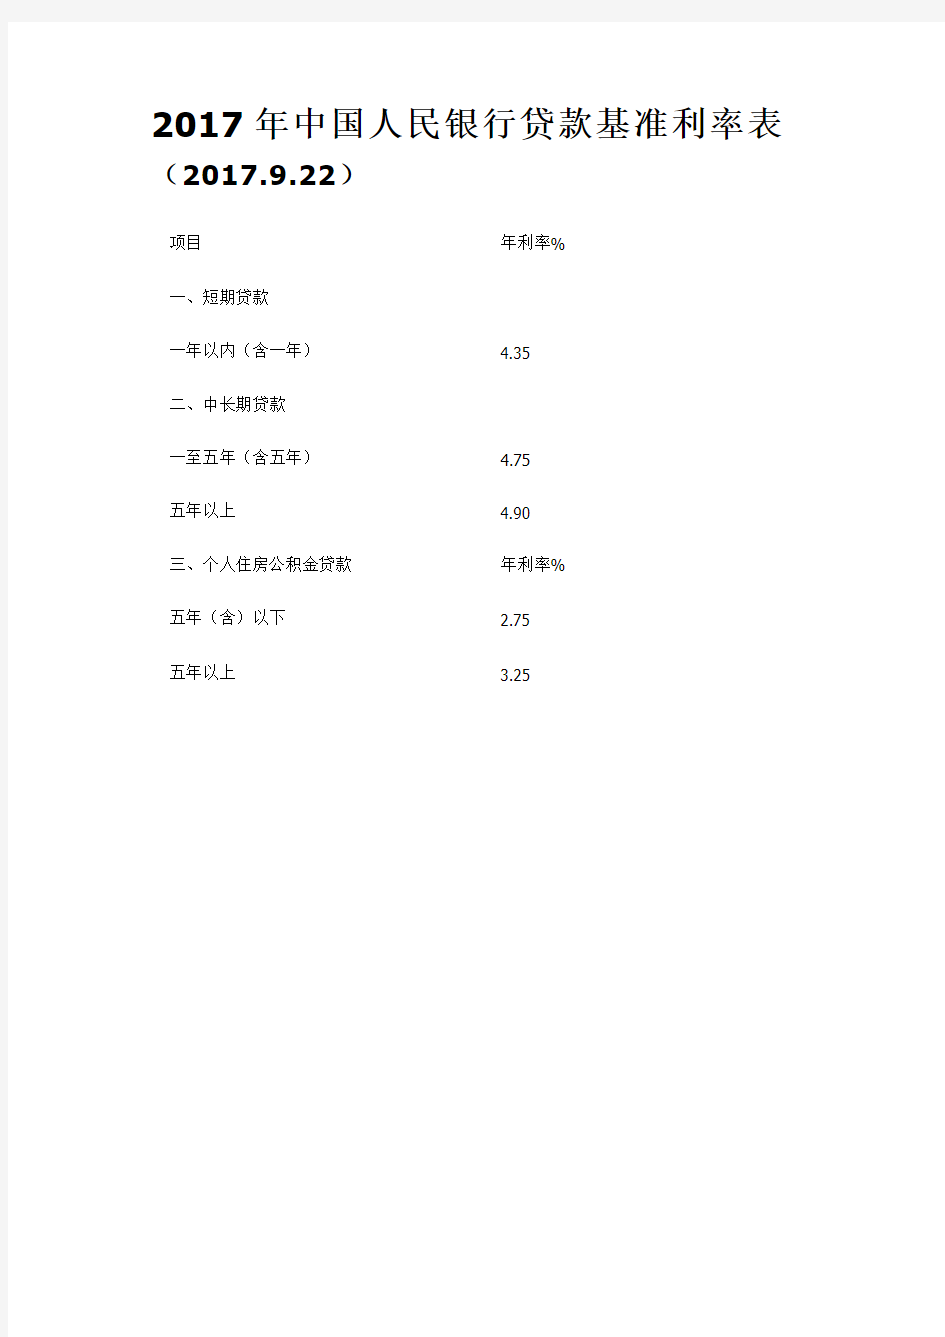 2017年中国人民银行贷款基准利率表